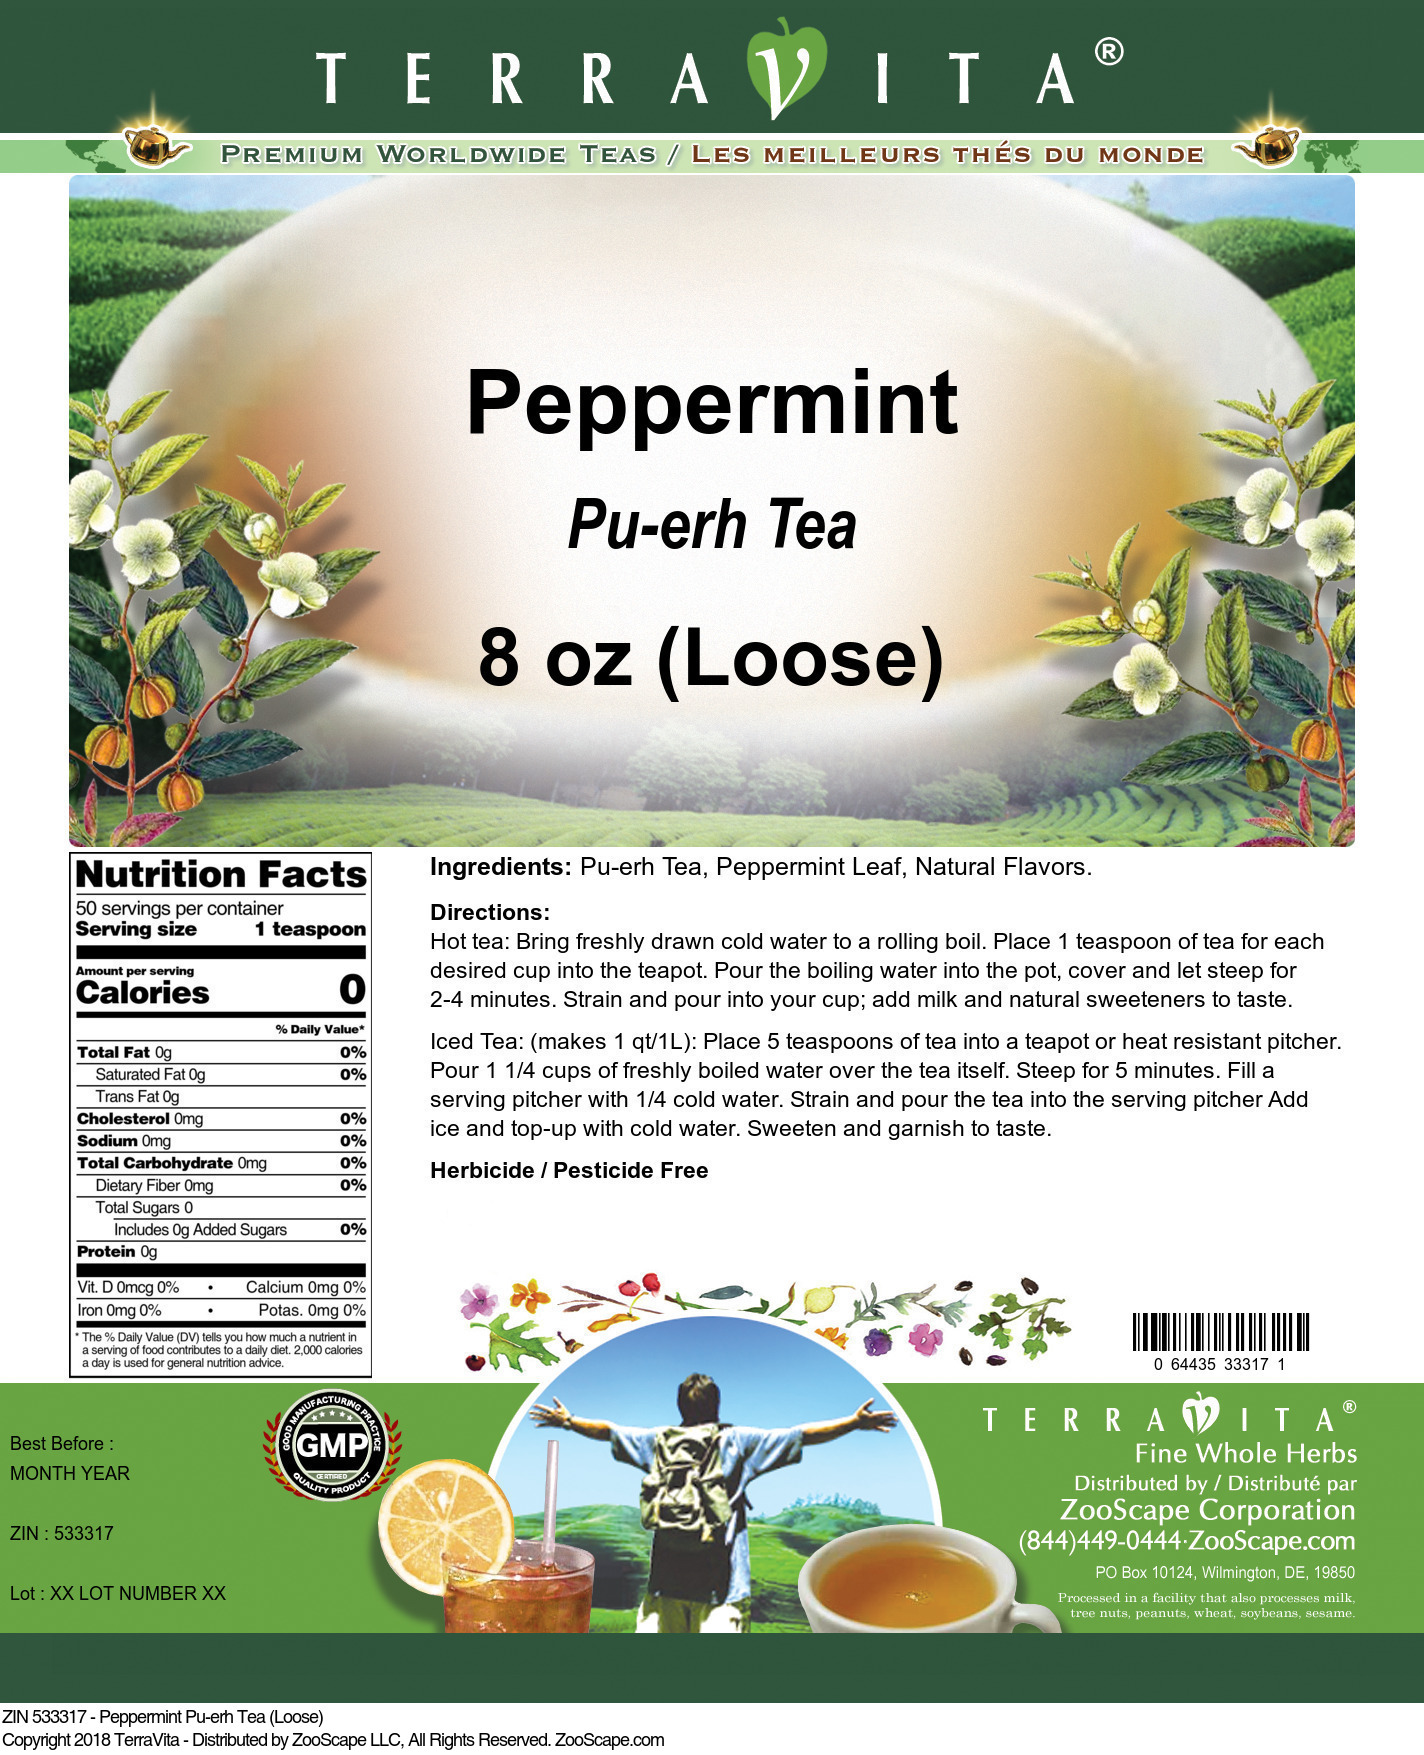 Peppermint Pu-erh Tea (Loose) - Label